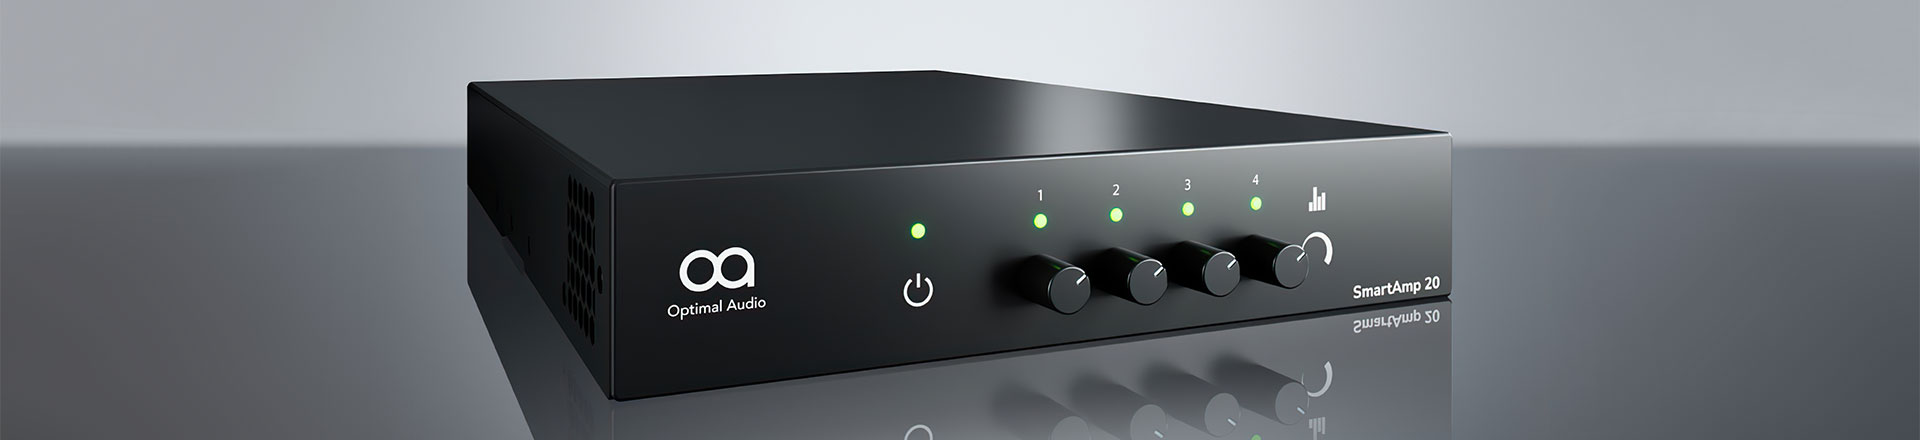 Optimal Audio dołącza do portfolio produktów firmy Polsound